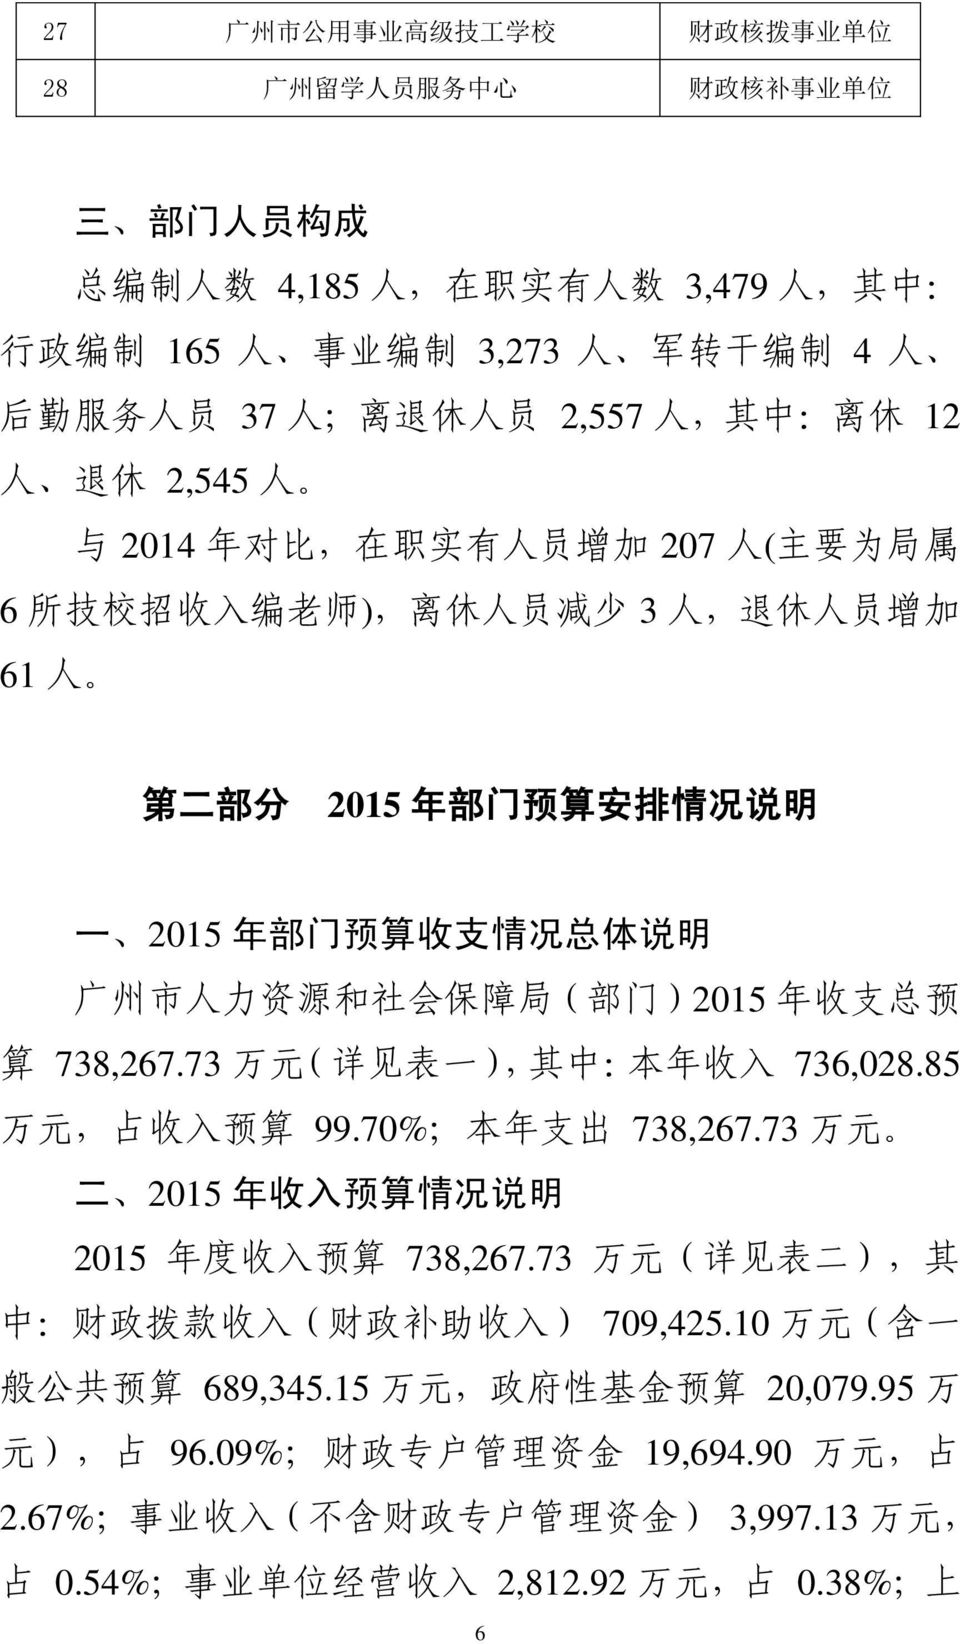 年 部 门 预 算 收 支 情 况 总 体 说 明 广 州 市 人 力 资 源 和 社 会 保 障 局 ( 部 门 )2015 年 收 支 总 预 算 738,267.73 万 元 ( 详 见 表 一 ), 其 中 : 本 年 收 入 736,028.85 万 元, 占 收 入 预 算 99.70%; 本 年 支 出 738,267.